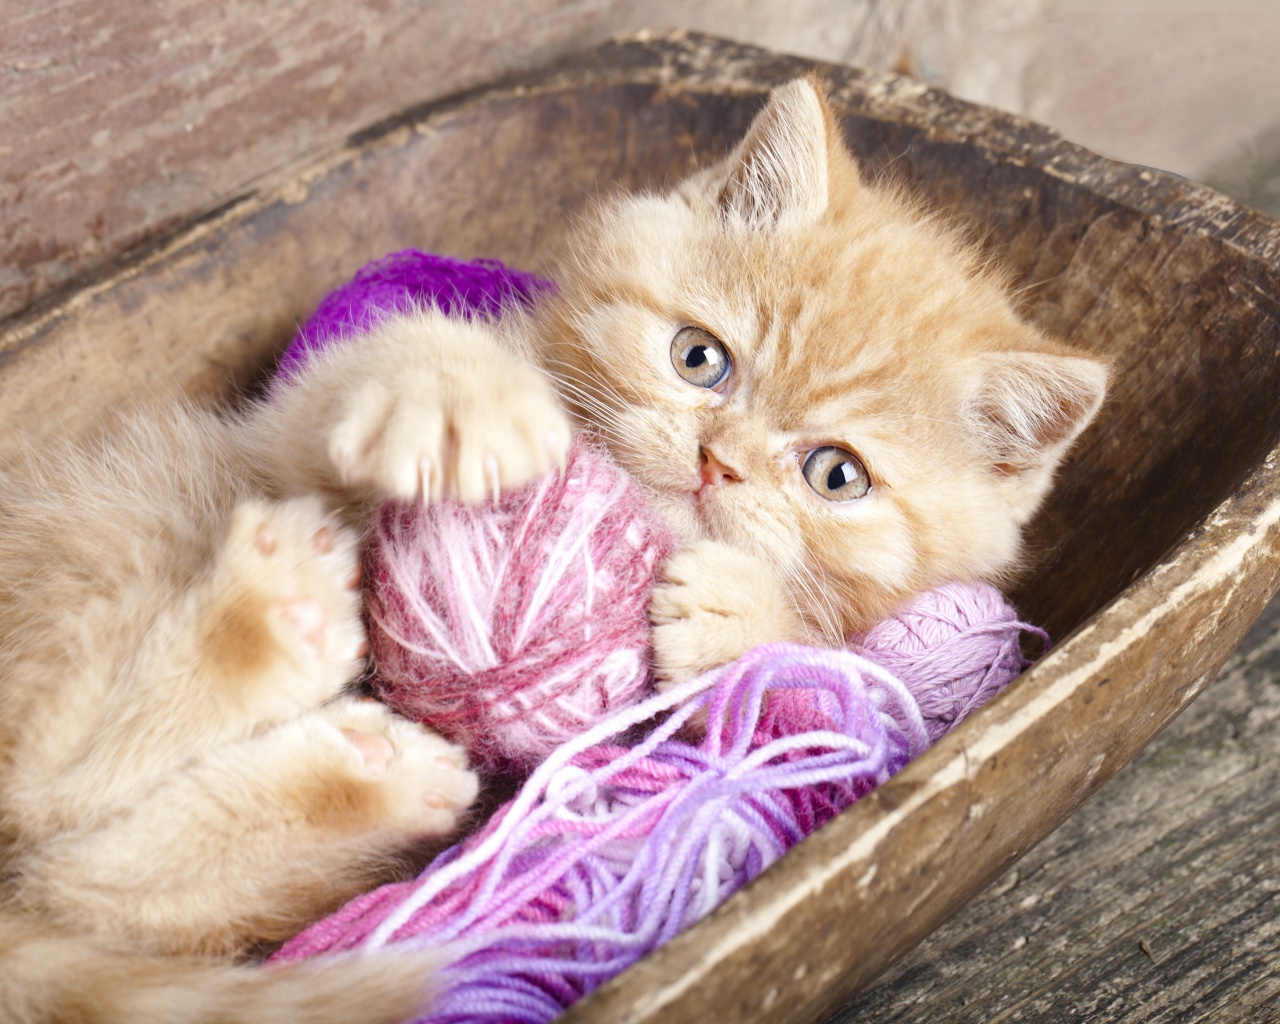 Cute Kitten Playing With A Ball Of Yarn screenshot #1 1280x1024